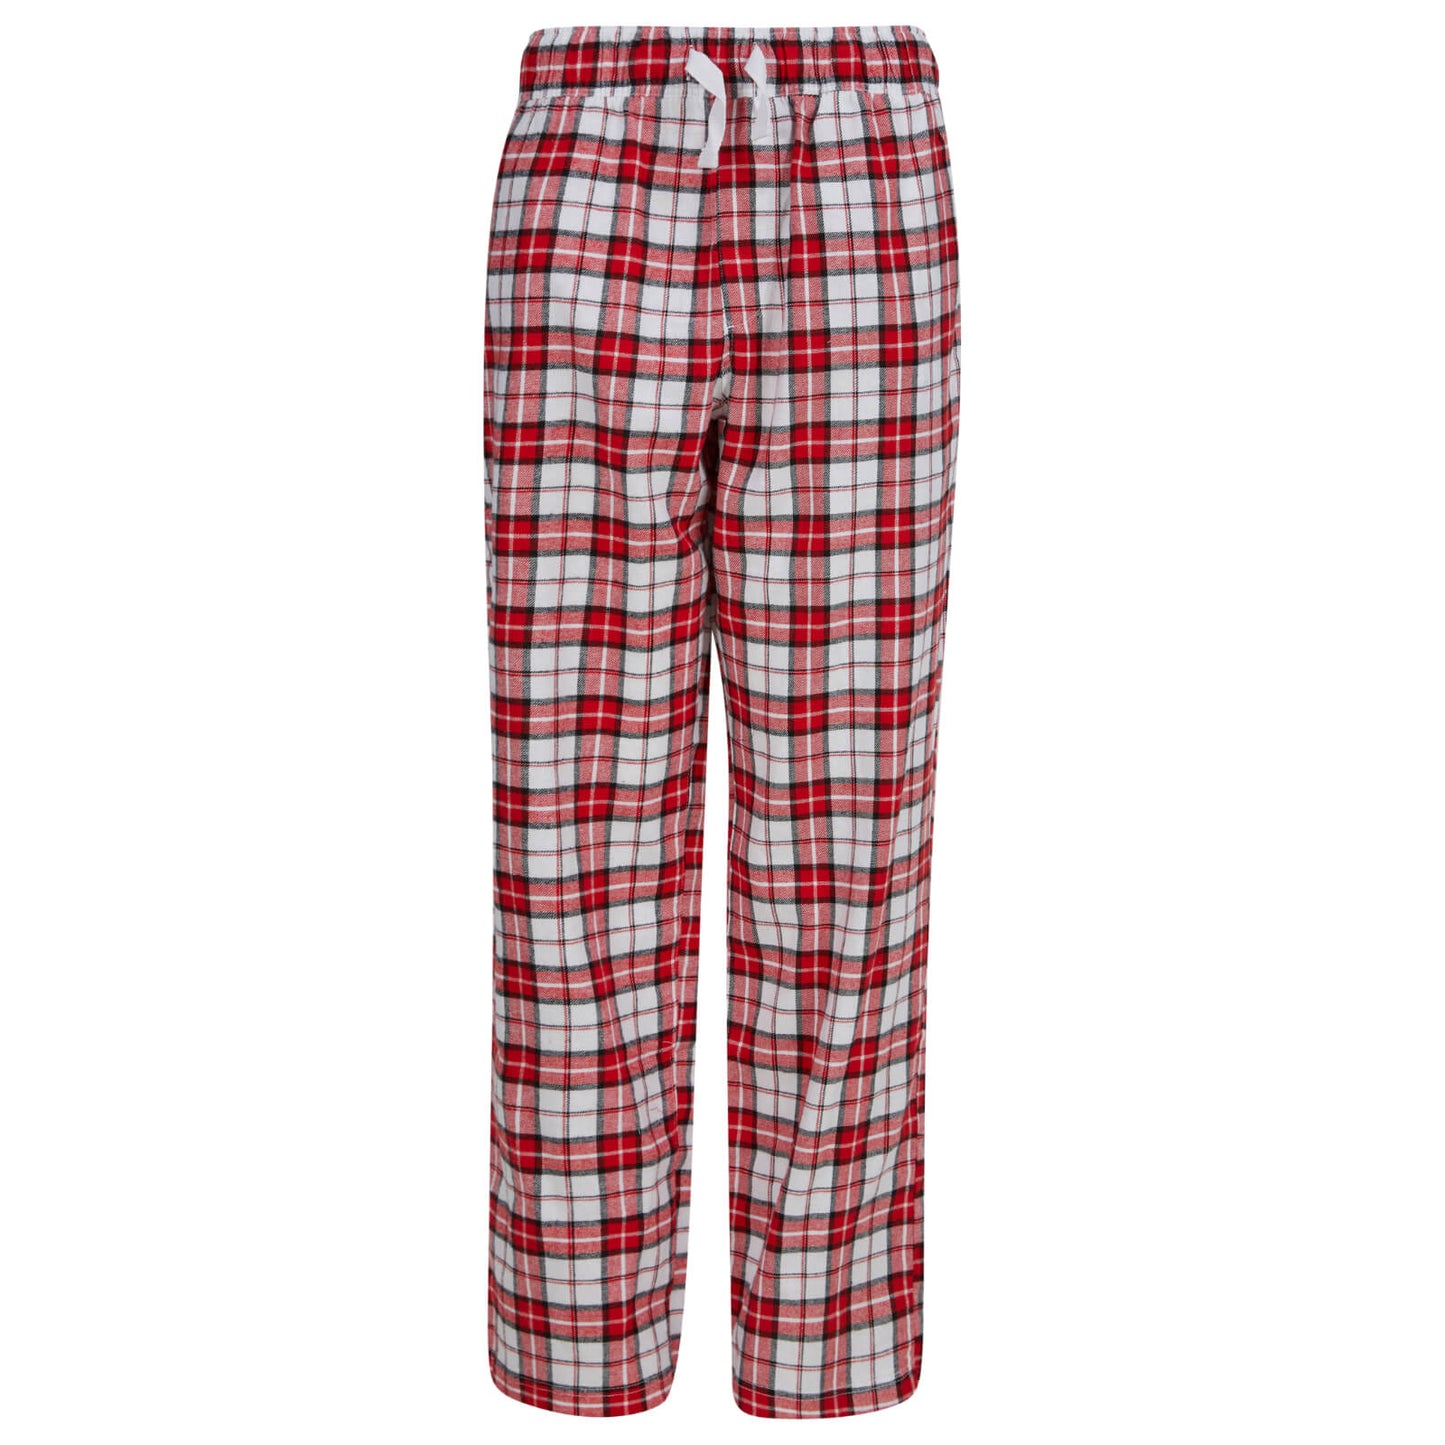 Mr Crimbo Womens Christmas Pyjama Set Rudolph Print/Check Bottoms - MrCrimbo.co.uk -SRG3Q17469_A - Red/White -L